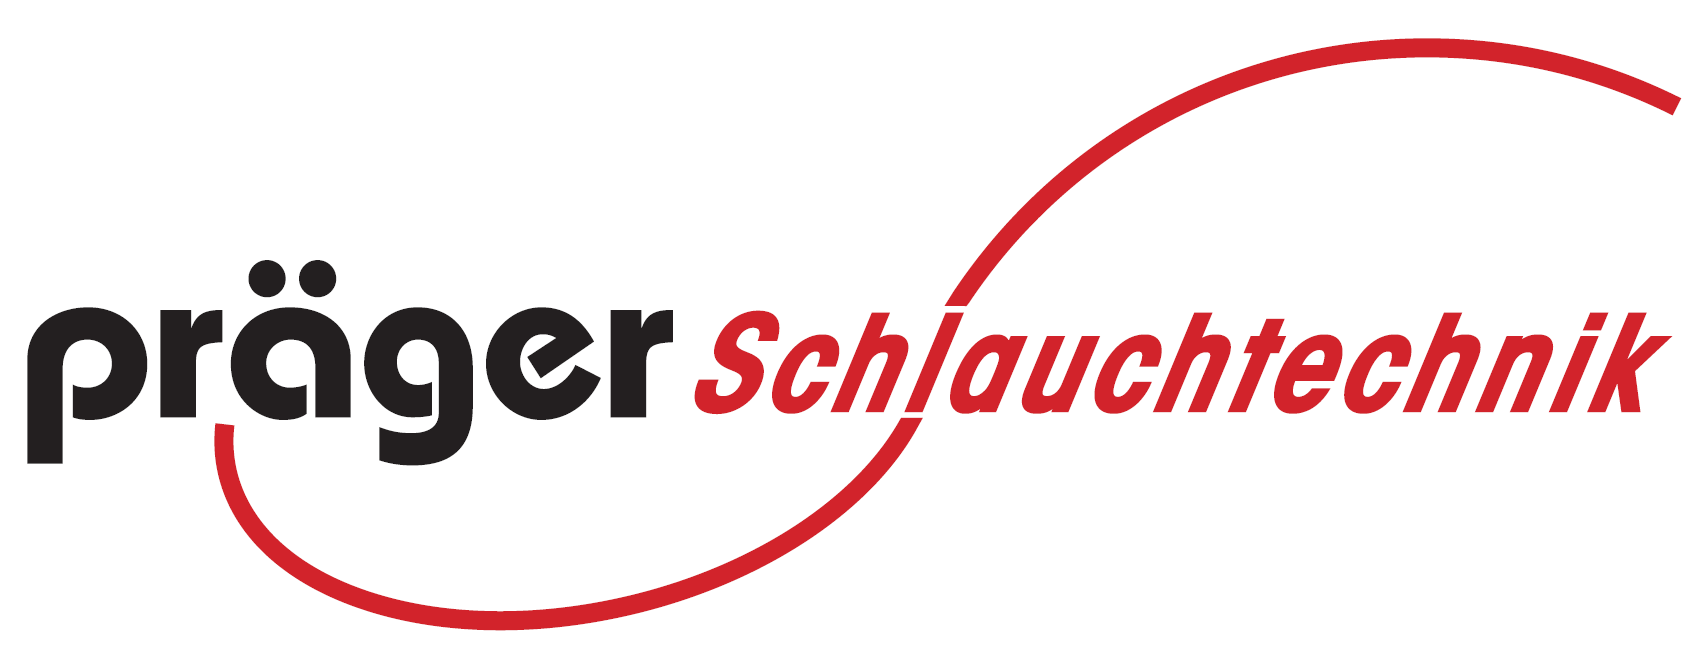 Logo der Präger Schlauchtechnik GmbH